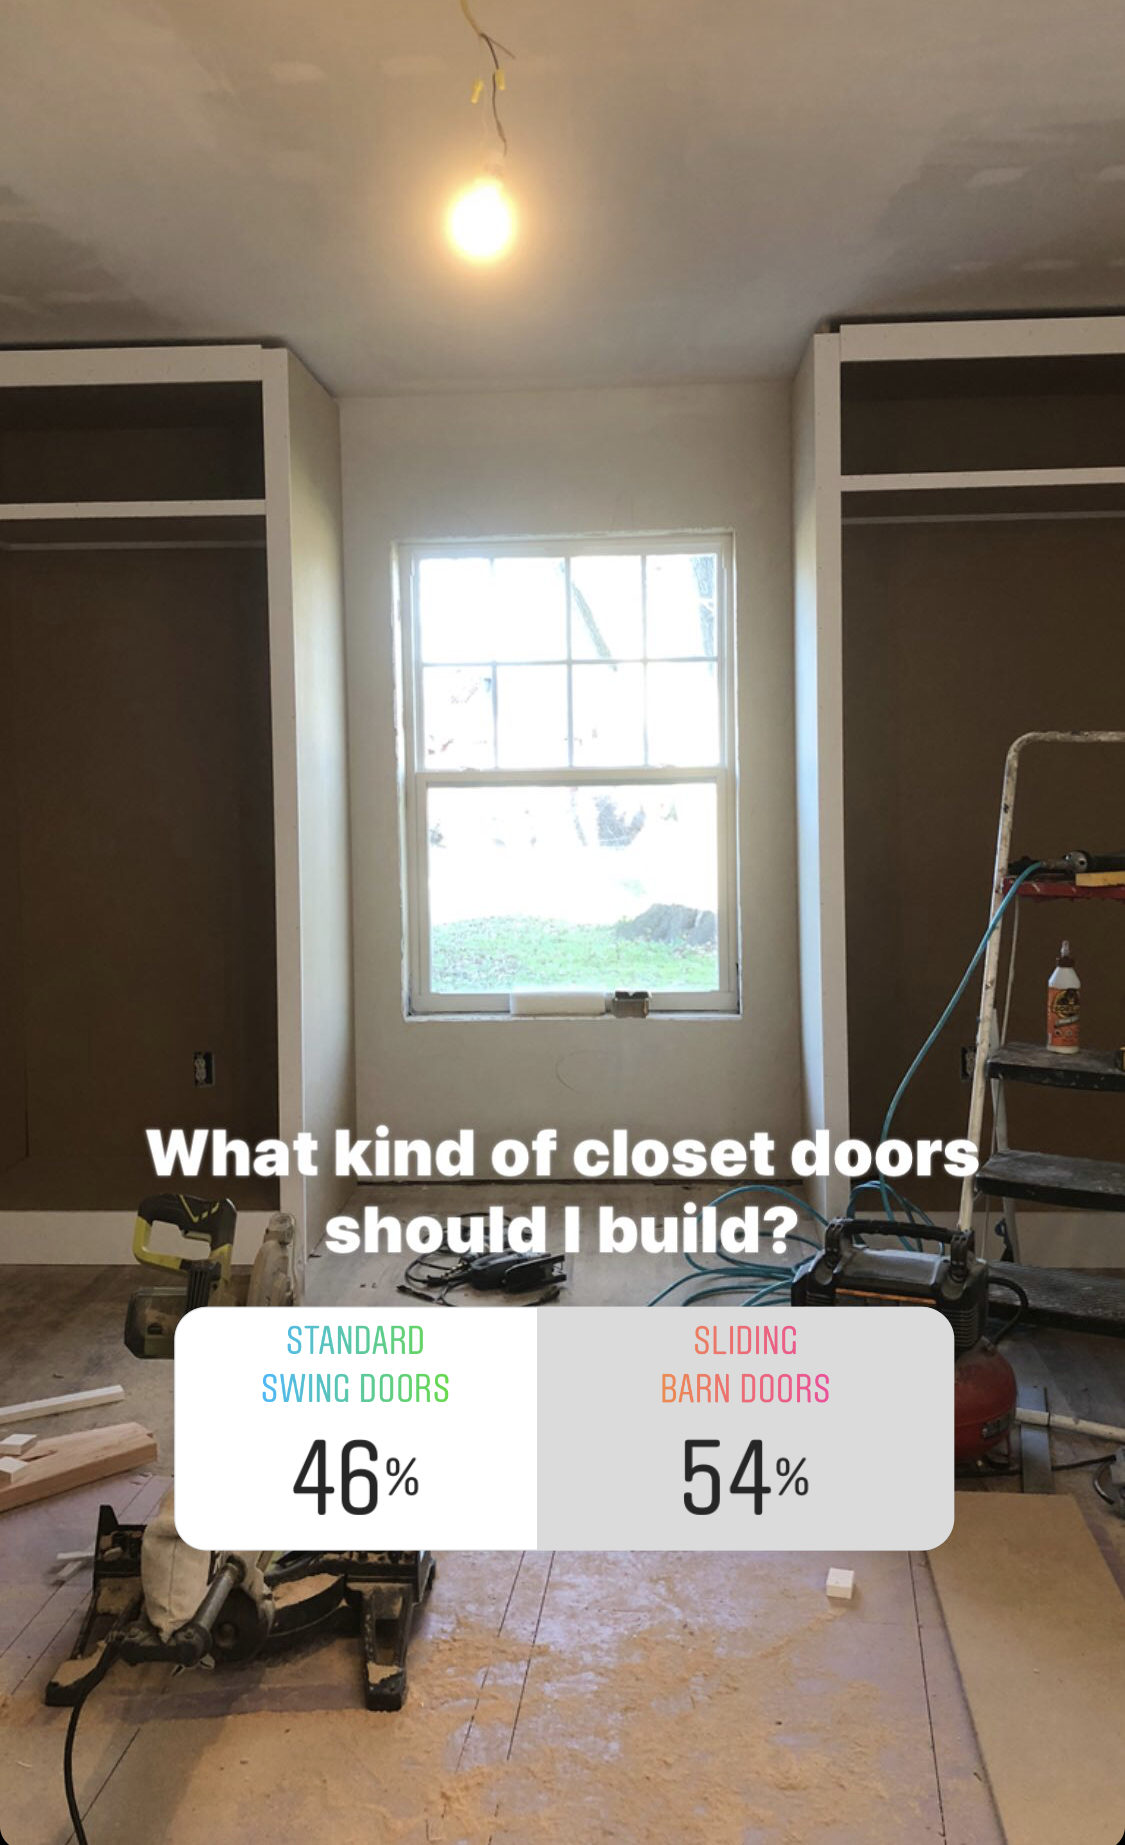 sondage instagram - quel genre de placards dois-je construire - portes battantes standard ou portes coulissantes de style grange